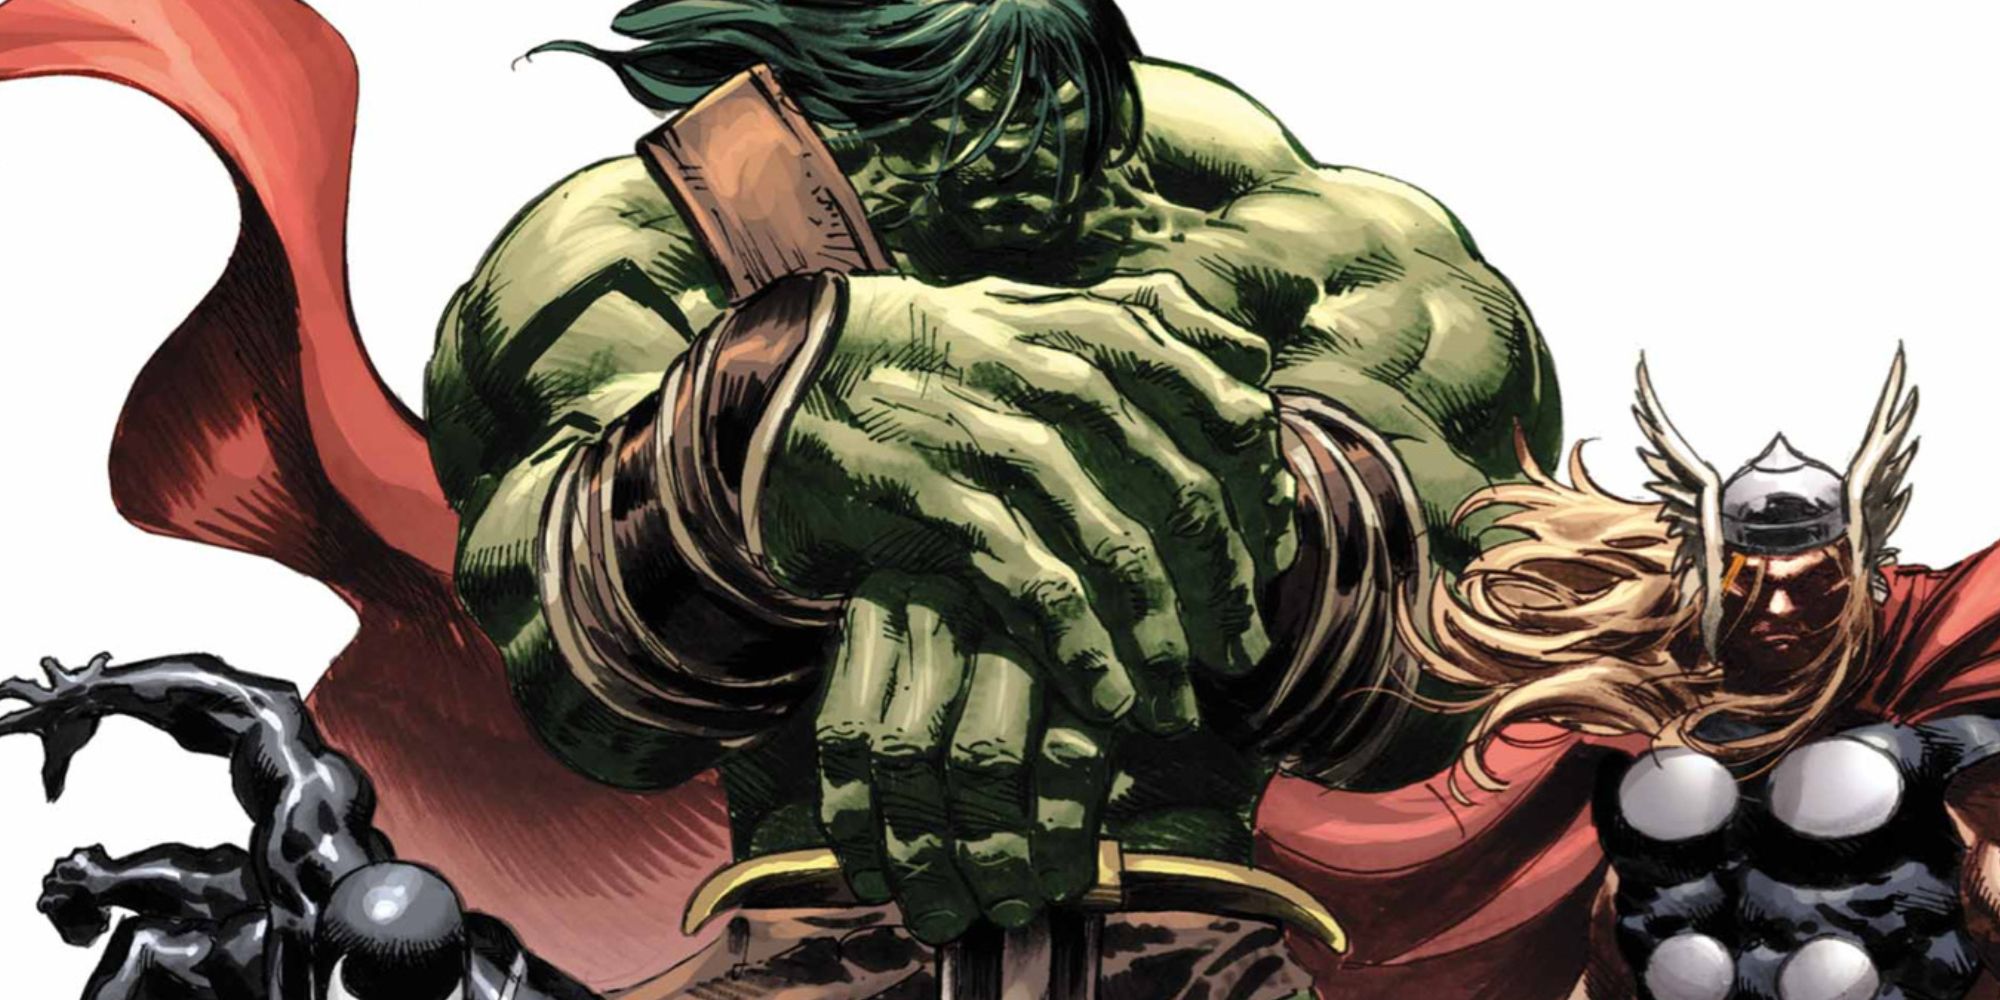 Skaar joins the Dark Avengers in Marvel Comics.